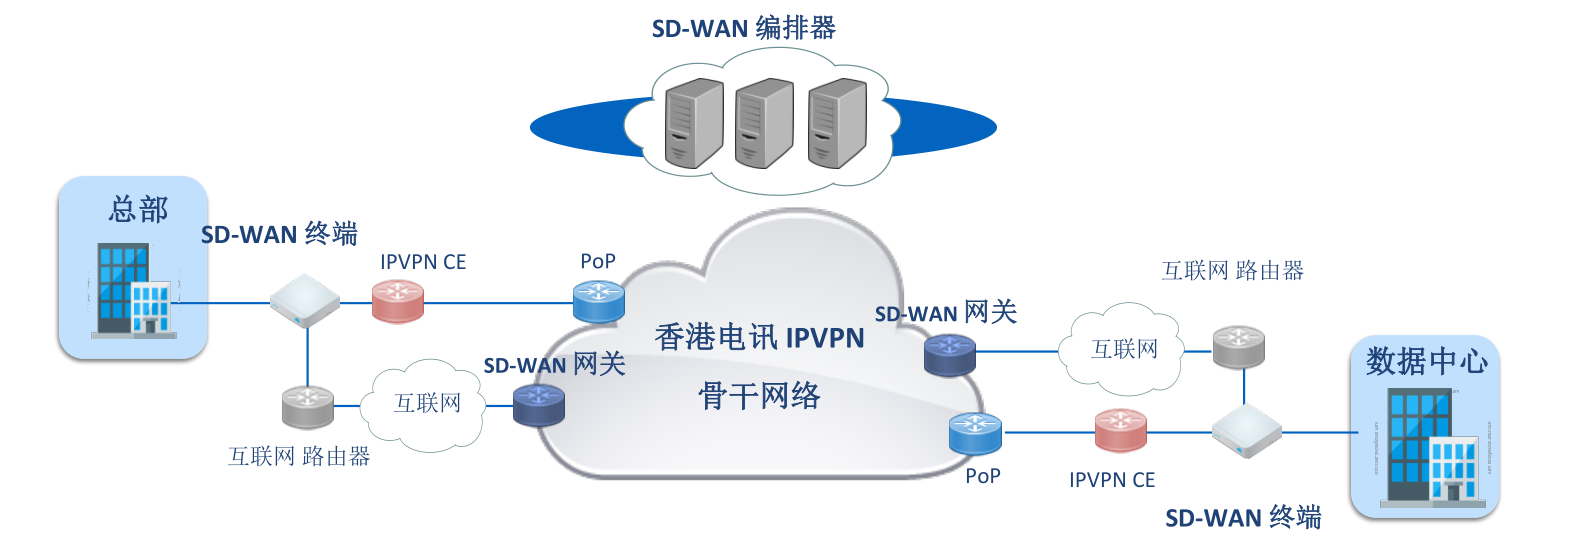 天网云主机域名SD-WAN网络服务商